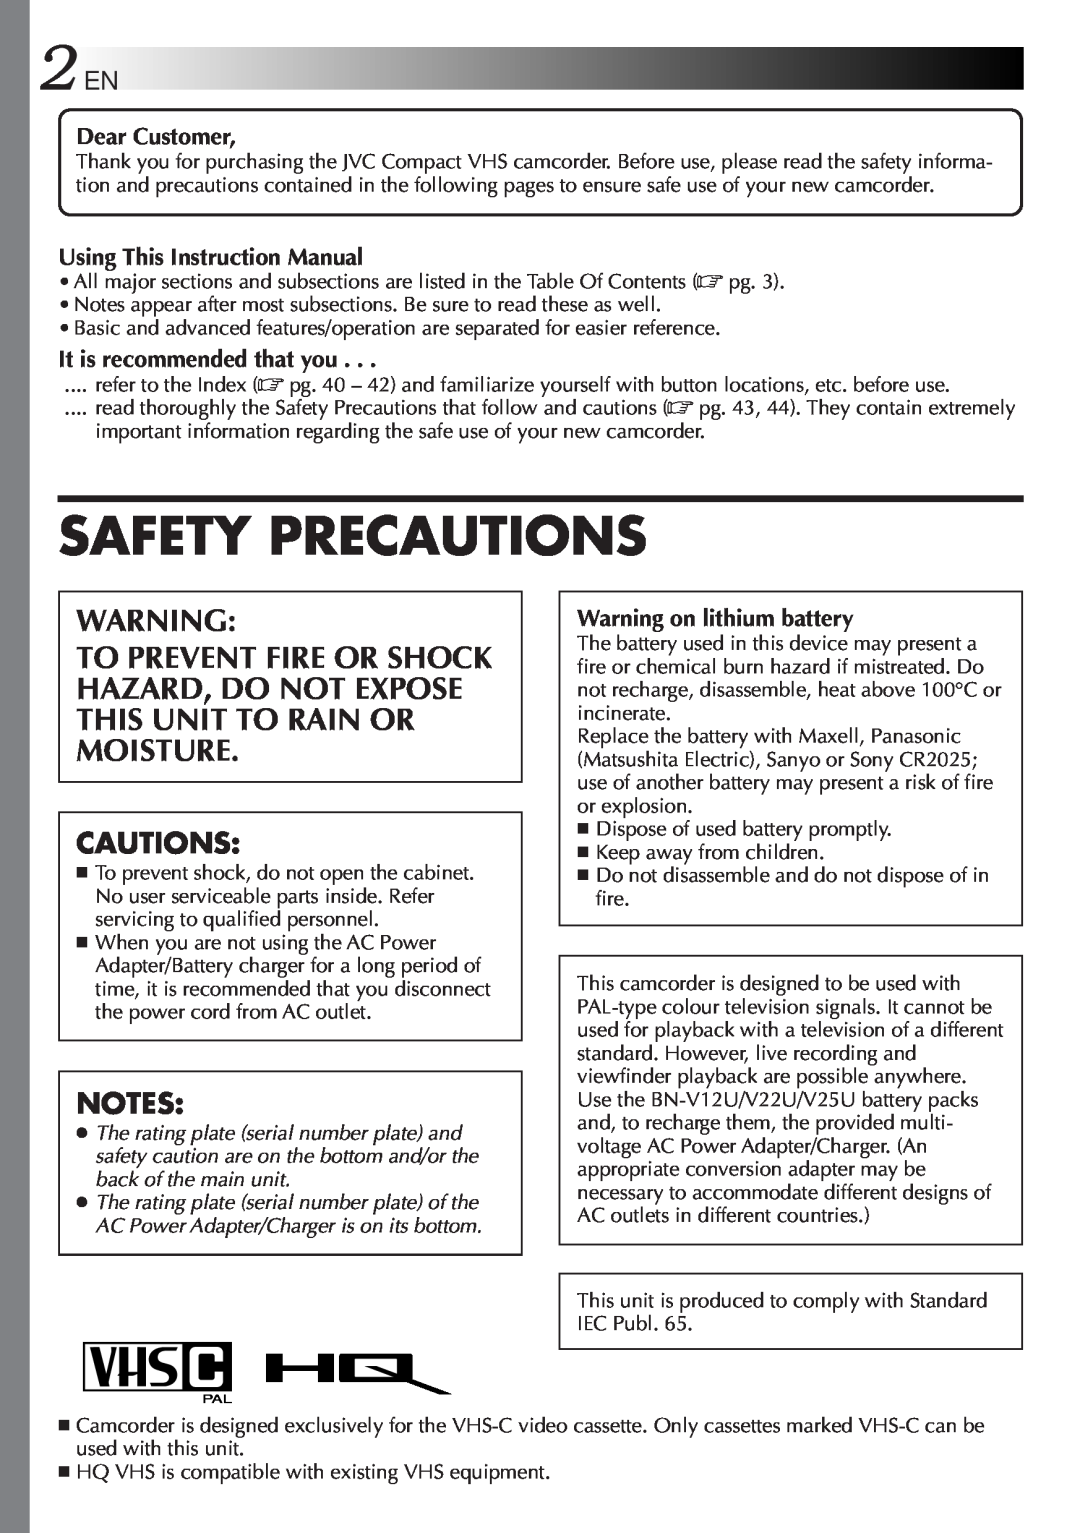 JVC 2EN instruction manual Cautions, Safety Precautions 